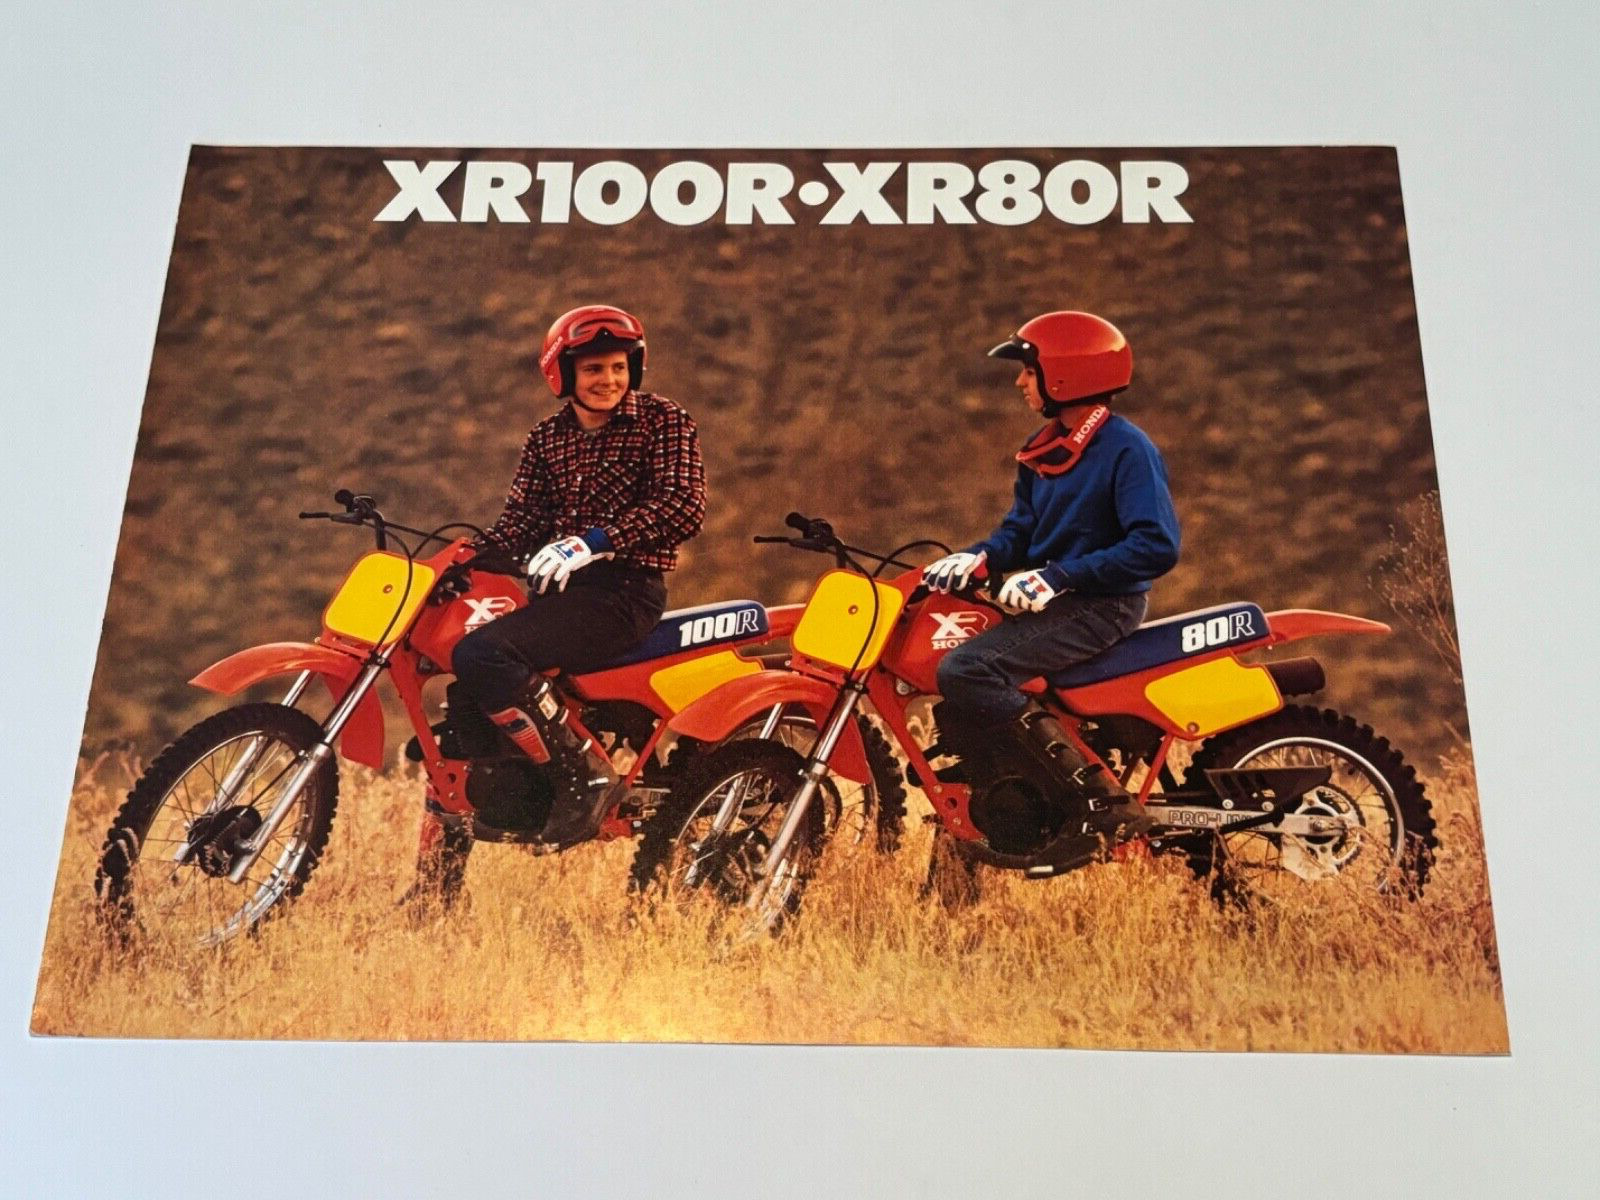 Original 1986 Honda XR100R-XR80R  Motorcycle Dealer Sales Brochure